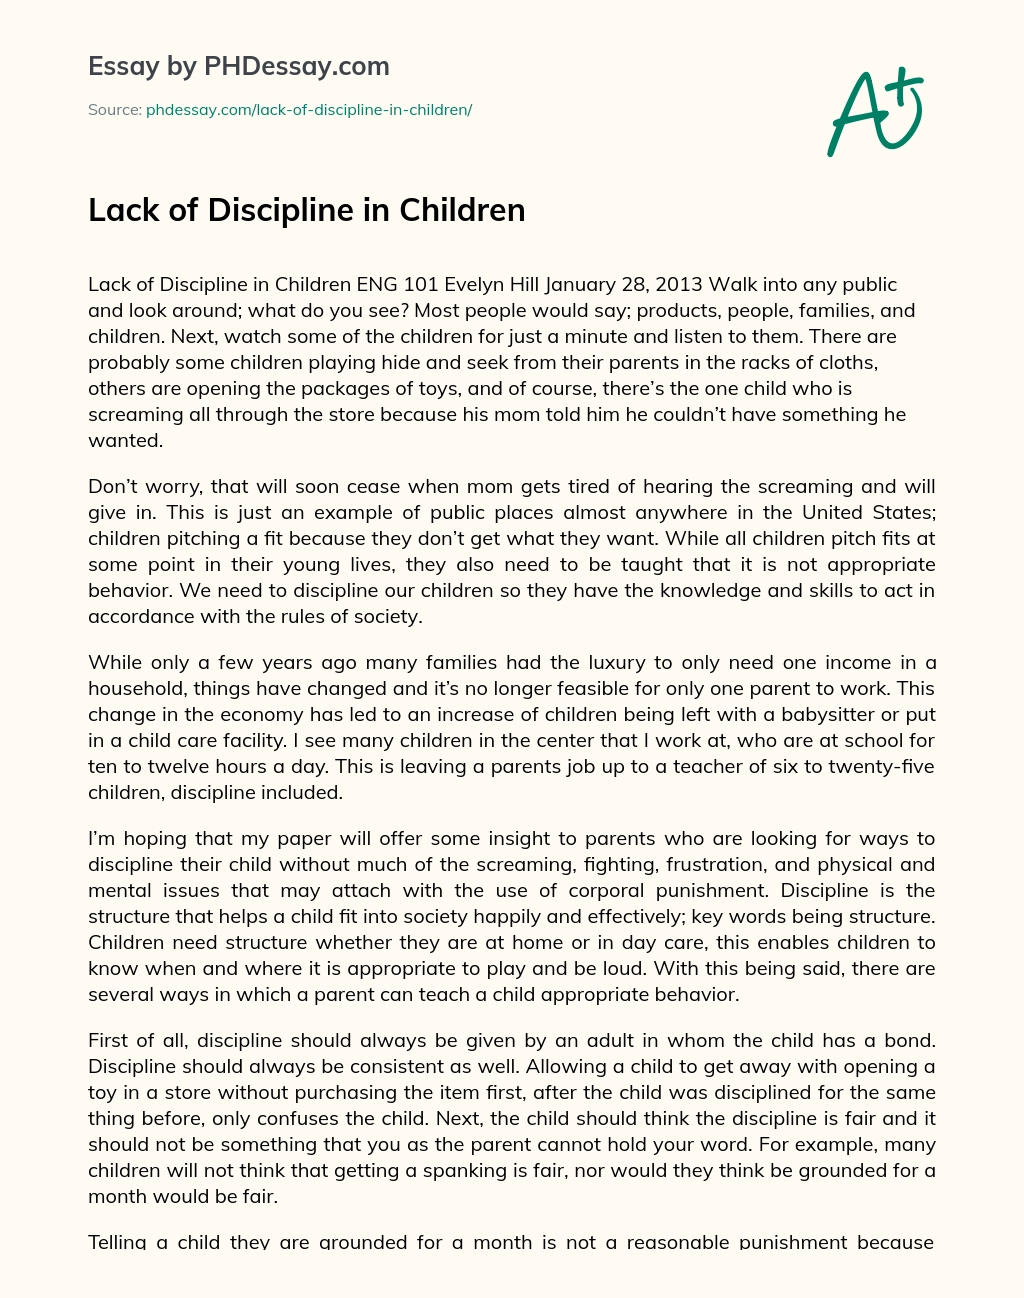 Lack of Discipline in Children essay